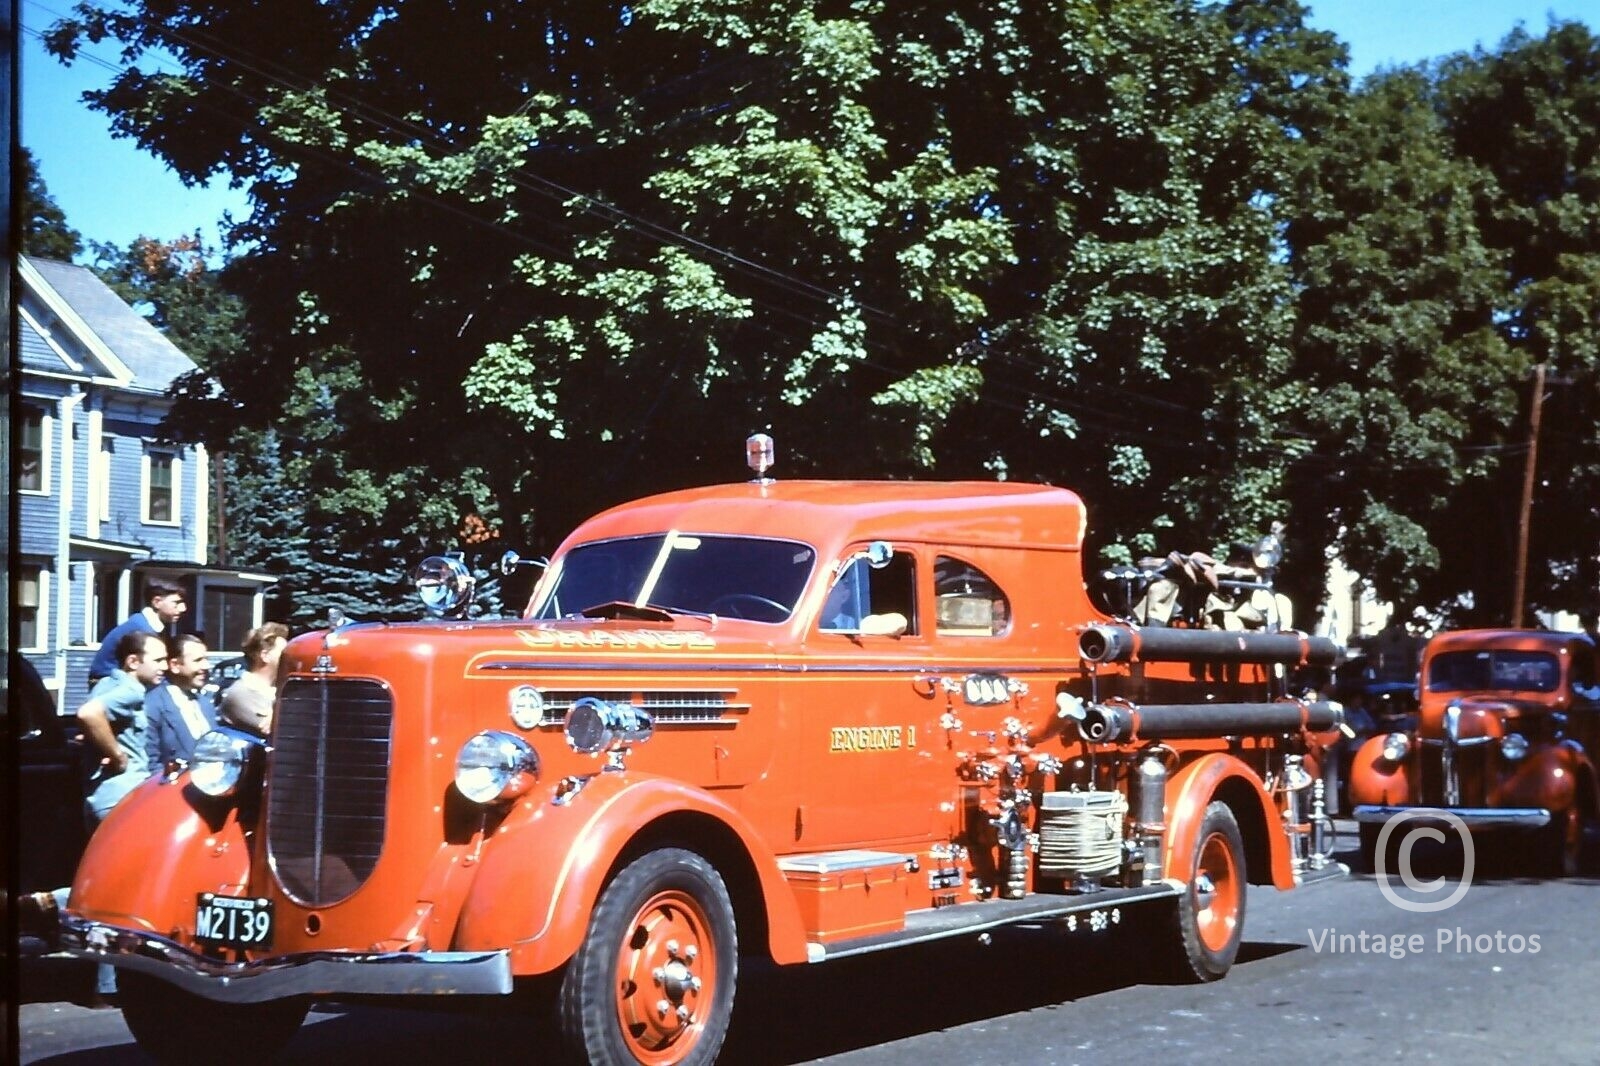 1950s Vintage Orange Fire Truck M2139